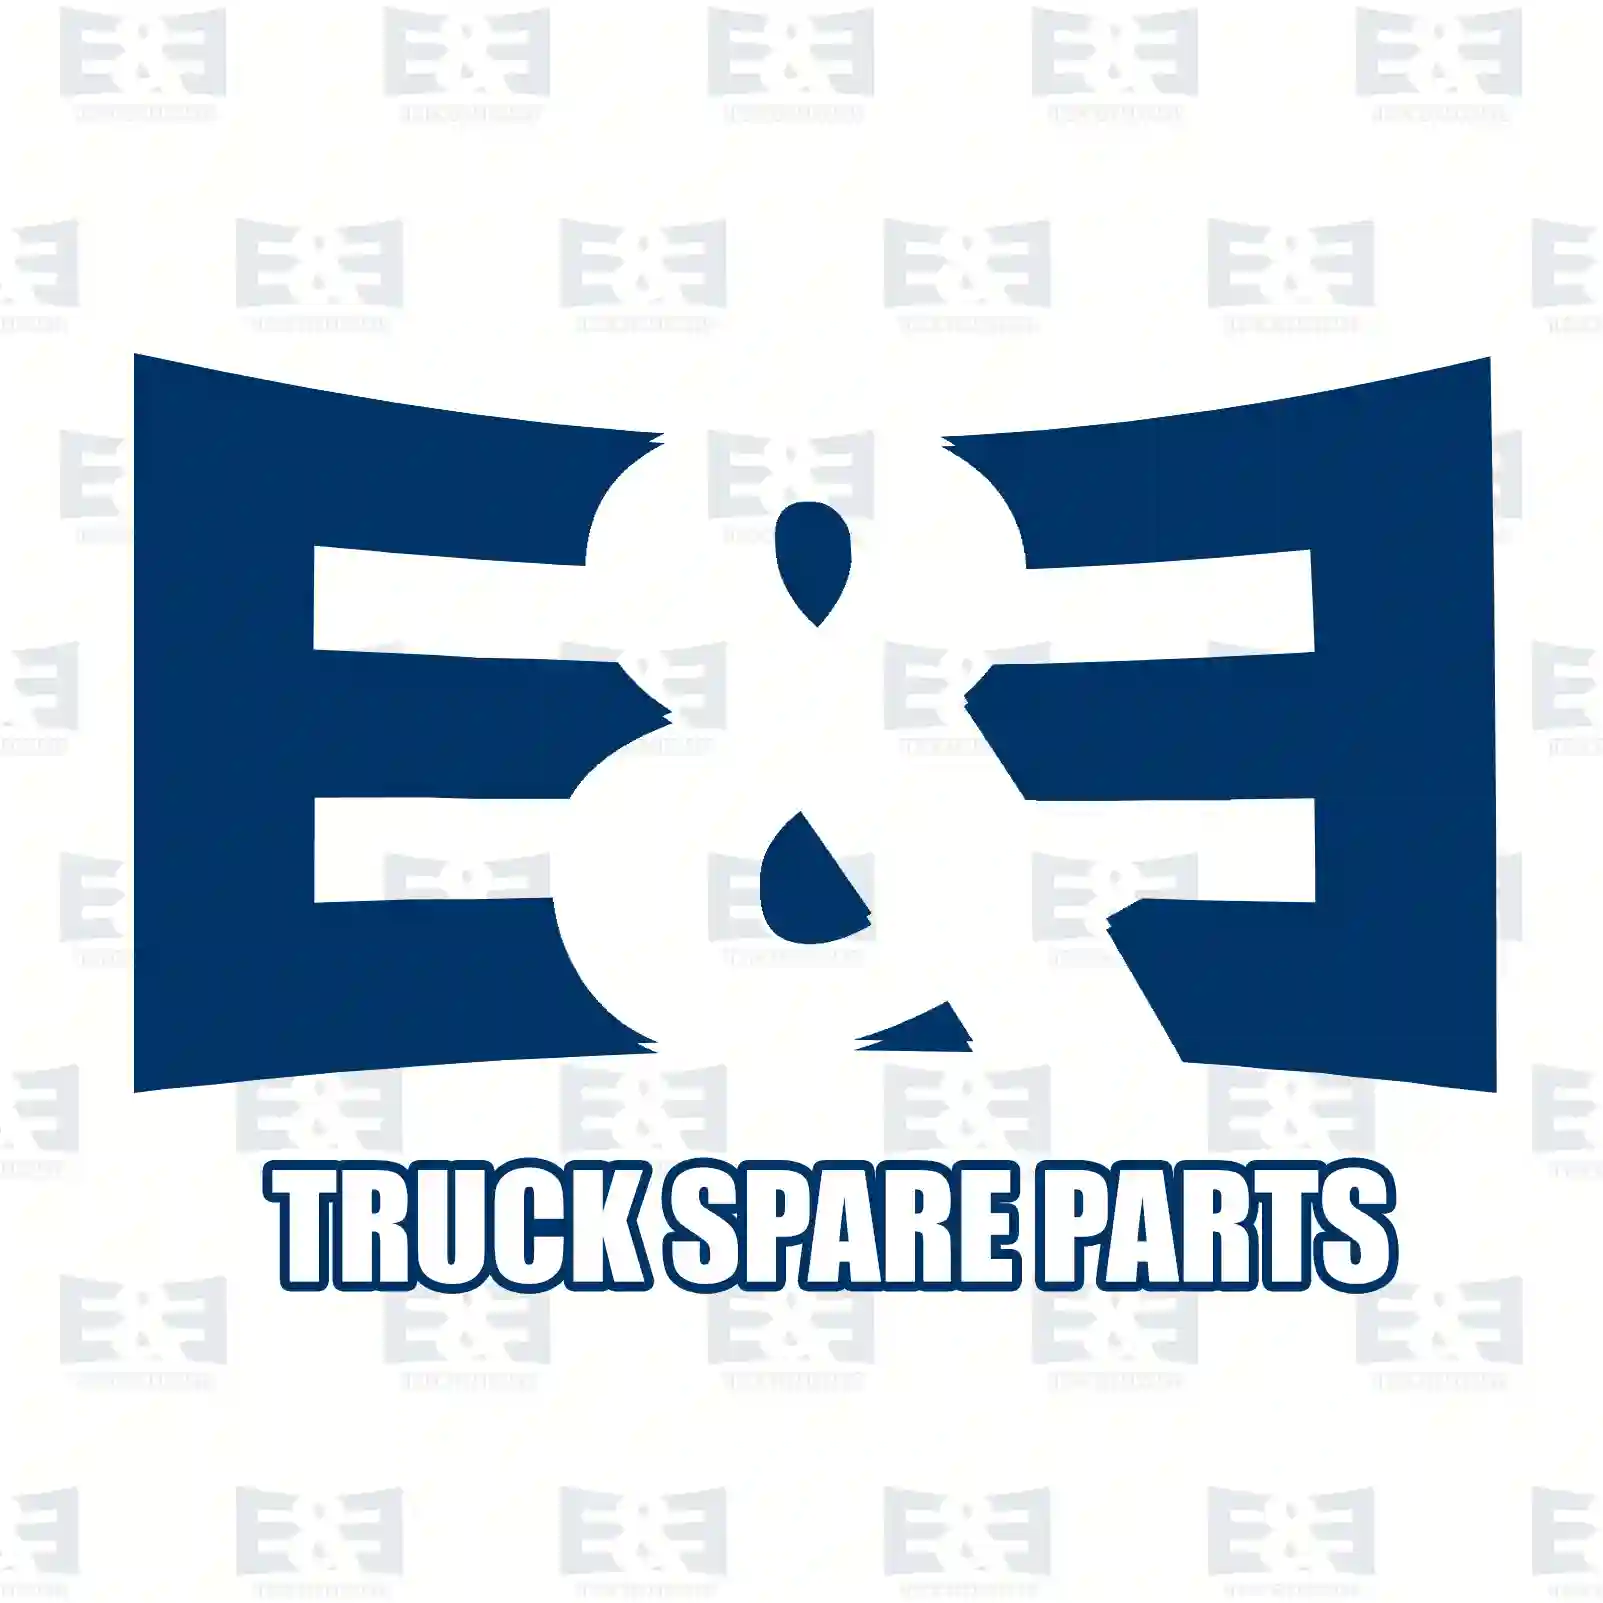 Brake shoe spring, 2E2293710, 21220859, 21220859PK10 ||  2E2293710 E&E Truck Spare Parts | Truck Spare Parts, Auotomotive Spare Parts Brake shoe spring, 2E2293710, 21220859, 21220859PK10 ||  2E2293710 E&E Truck Spare Parts | Truck Spare Parts, Auotomotive Spare Parts